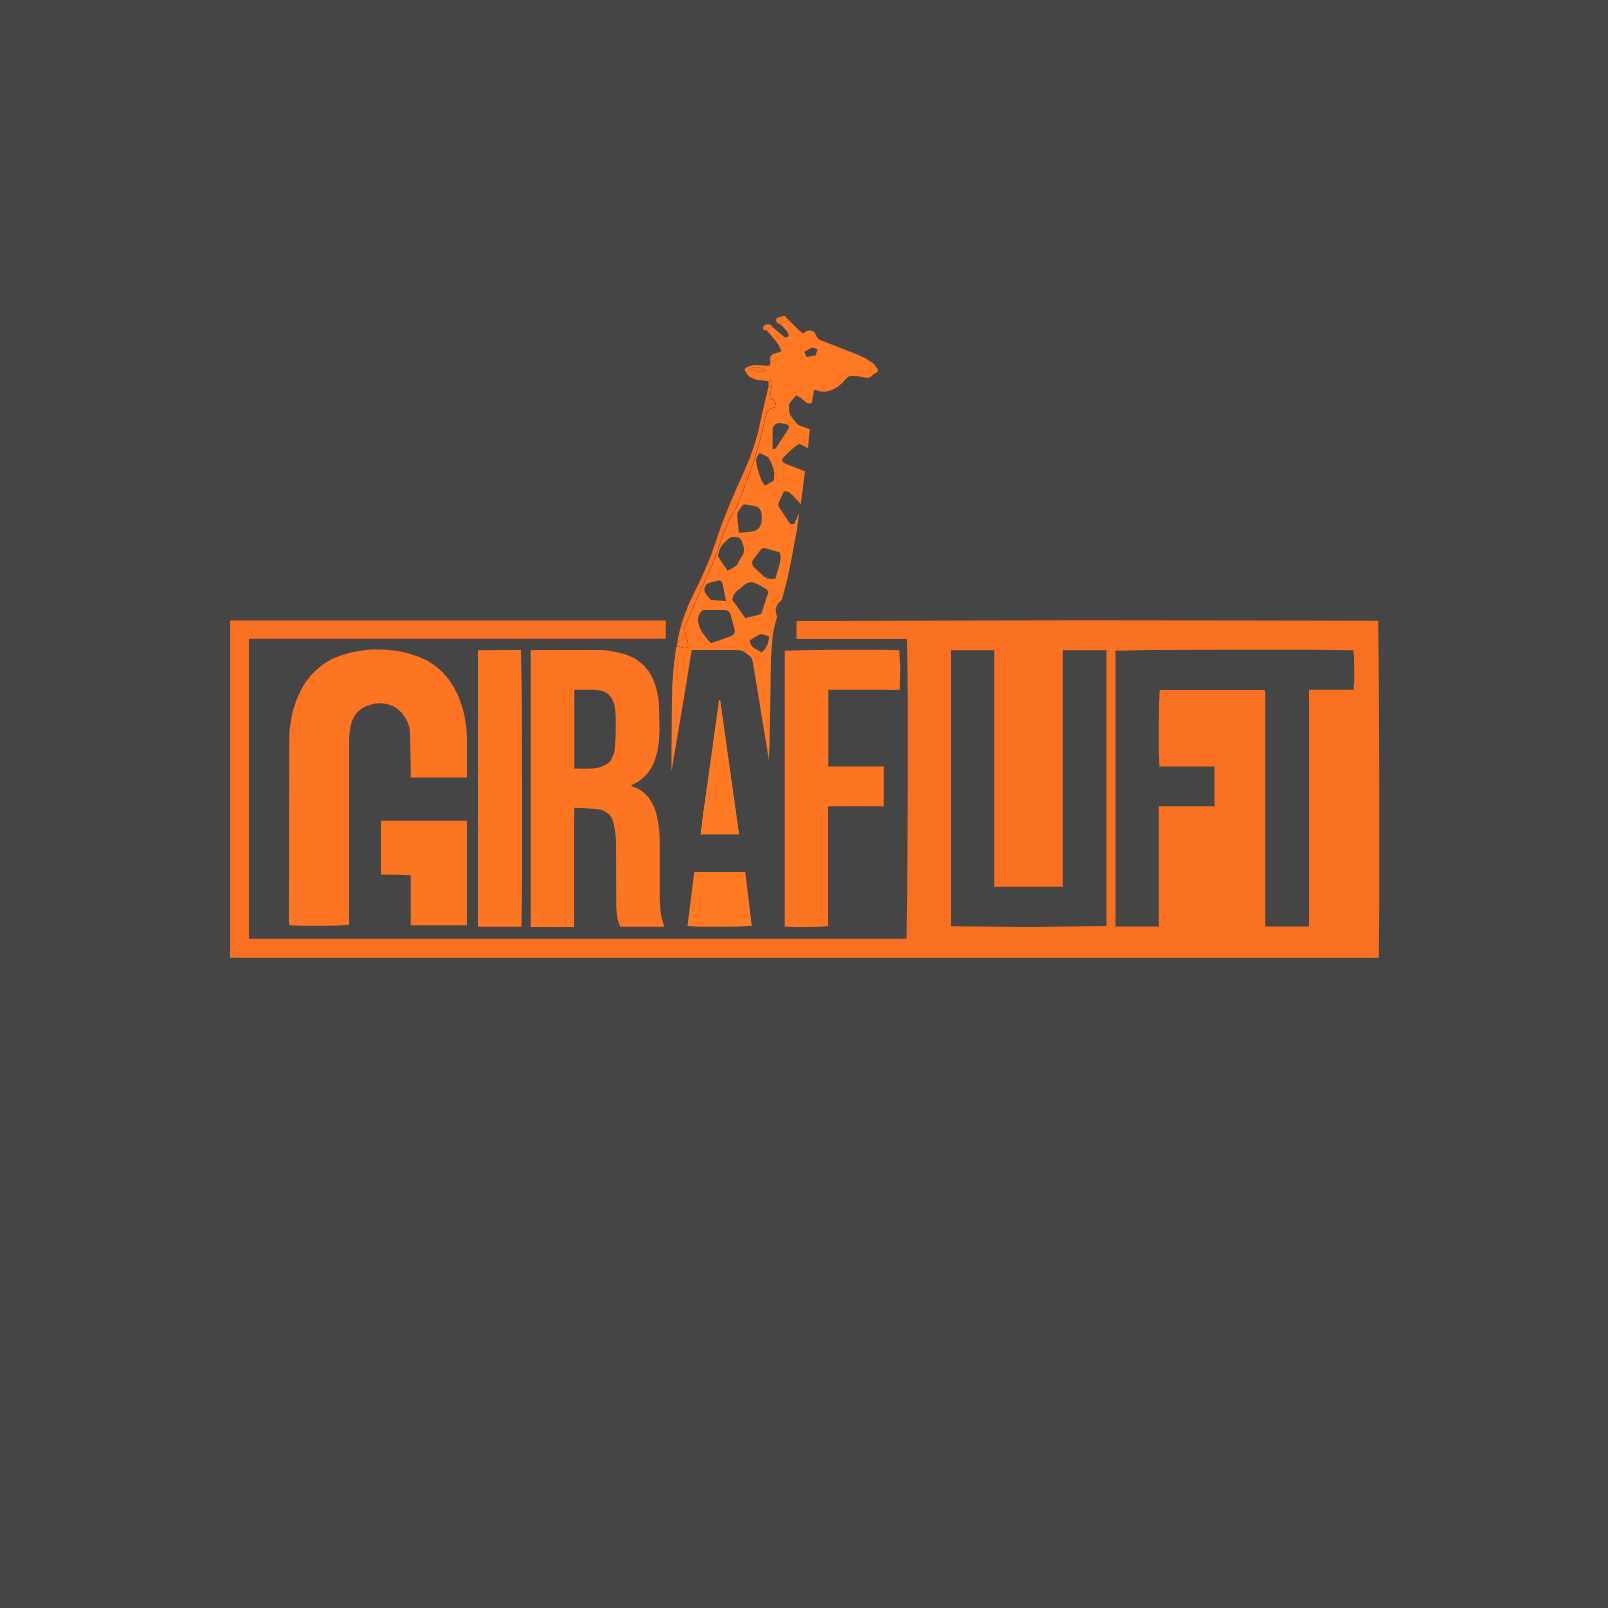 giraflift